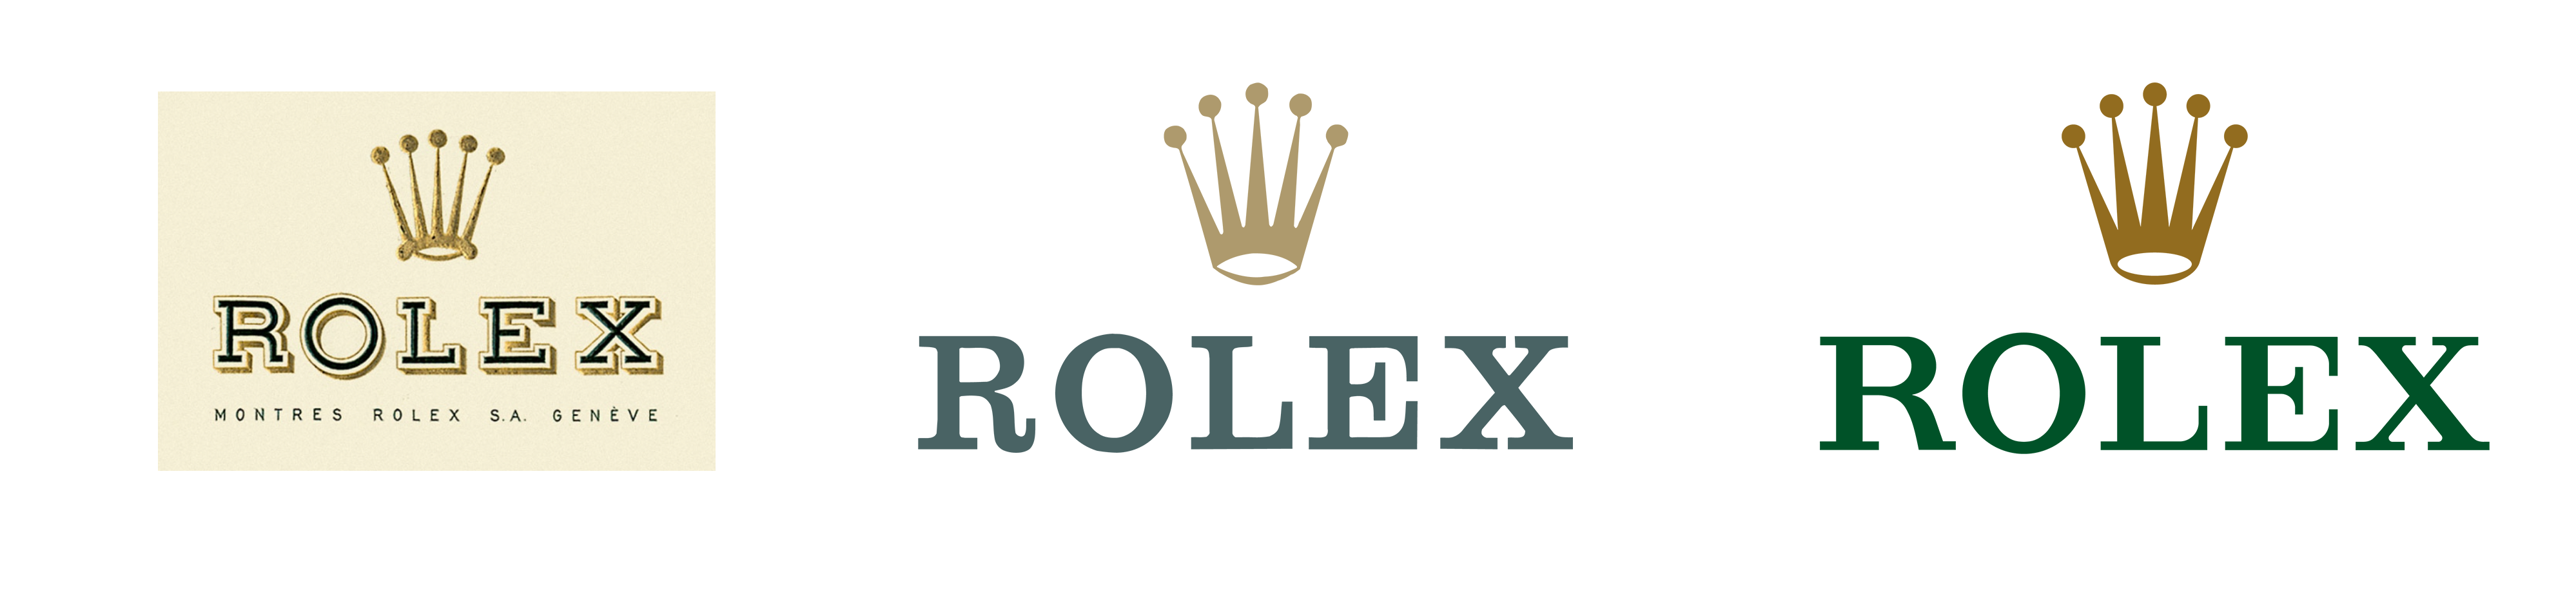 Історія Rolex: як бренд змінив стандарти консервативного ринку - news, story, business